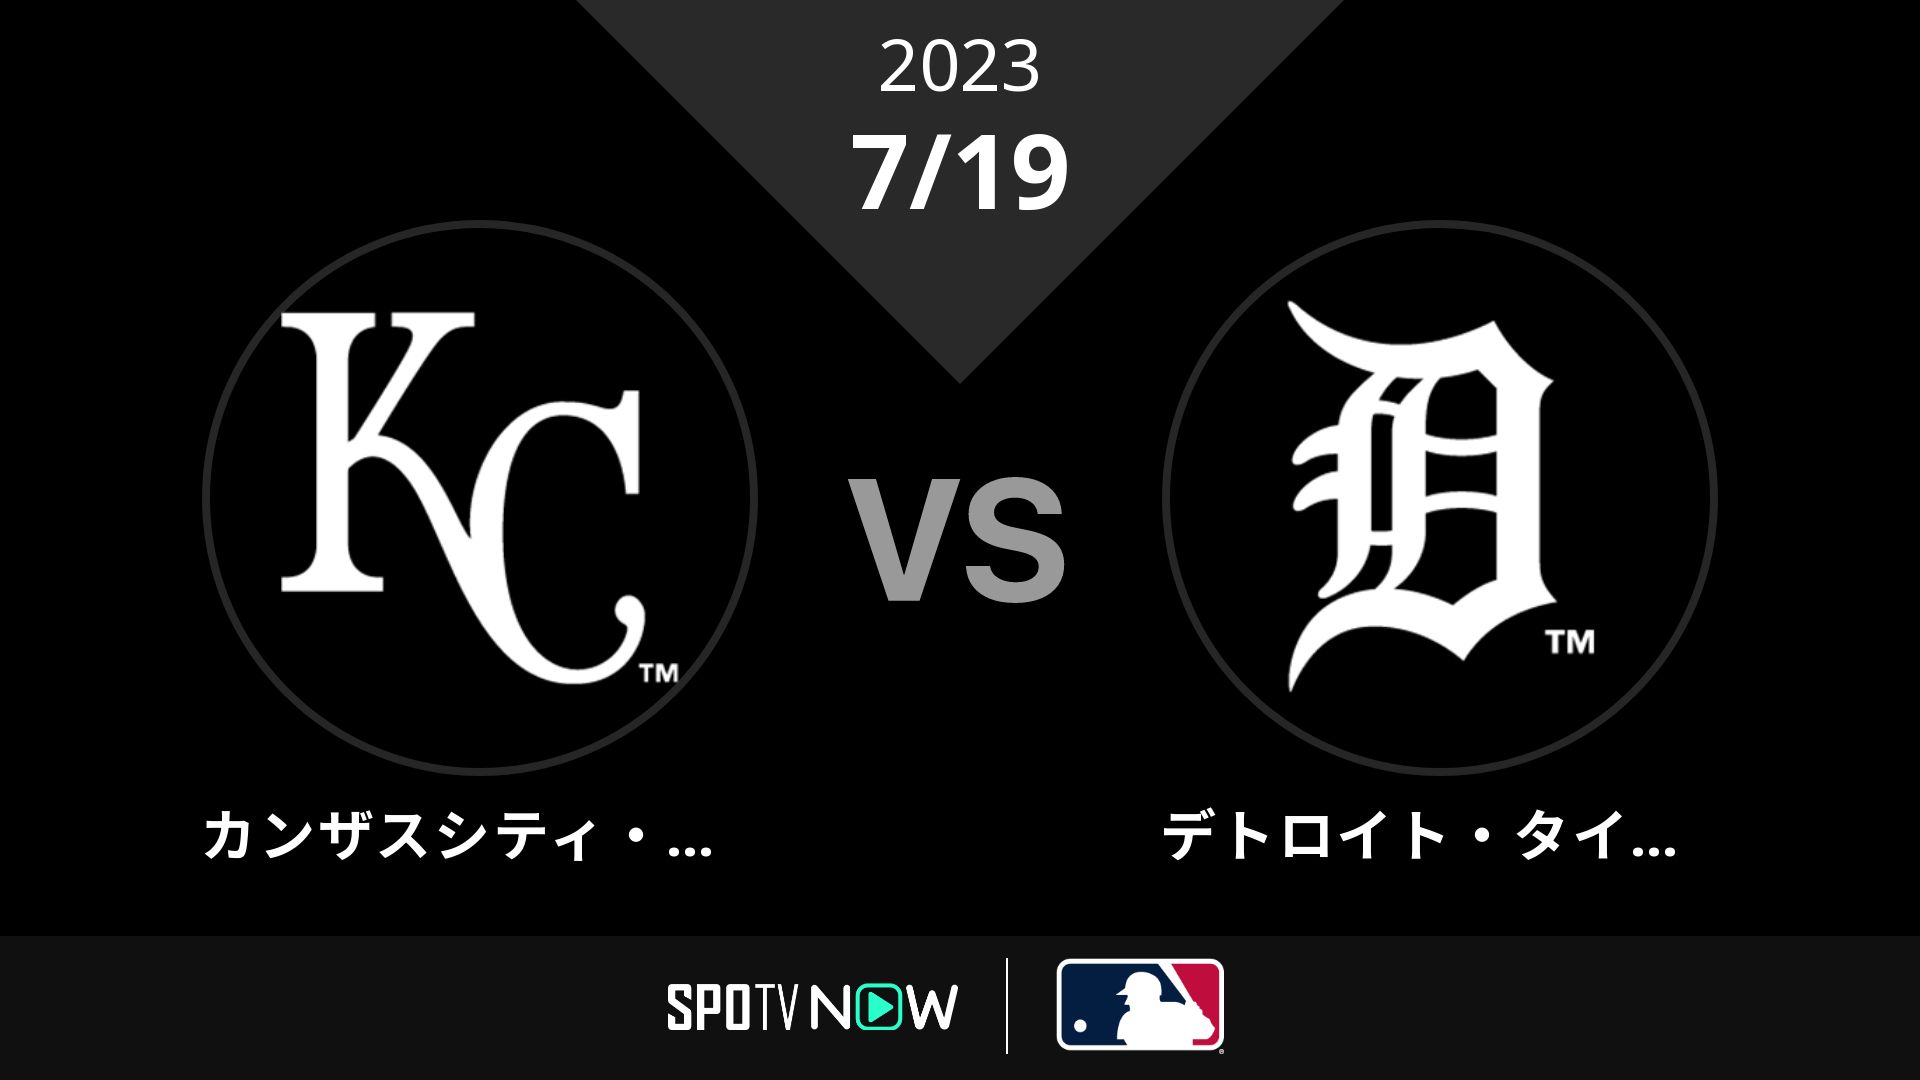 2023/7/19 ロイヤルズ vs タイガース [MLB]